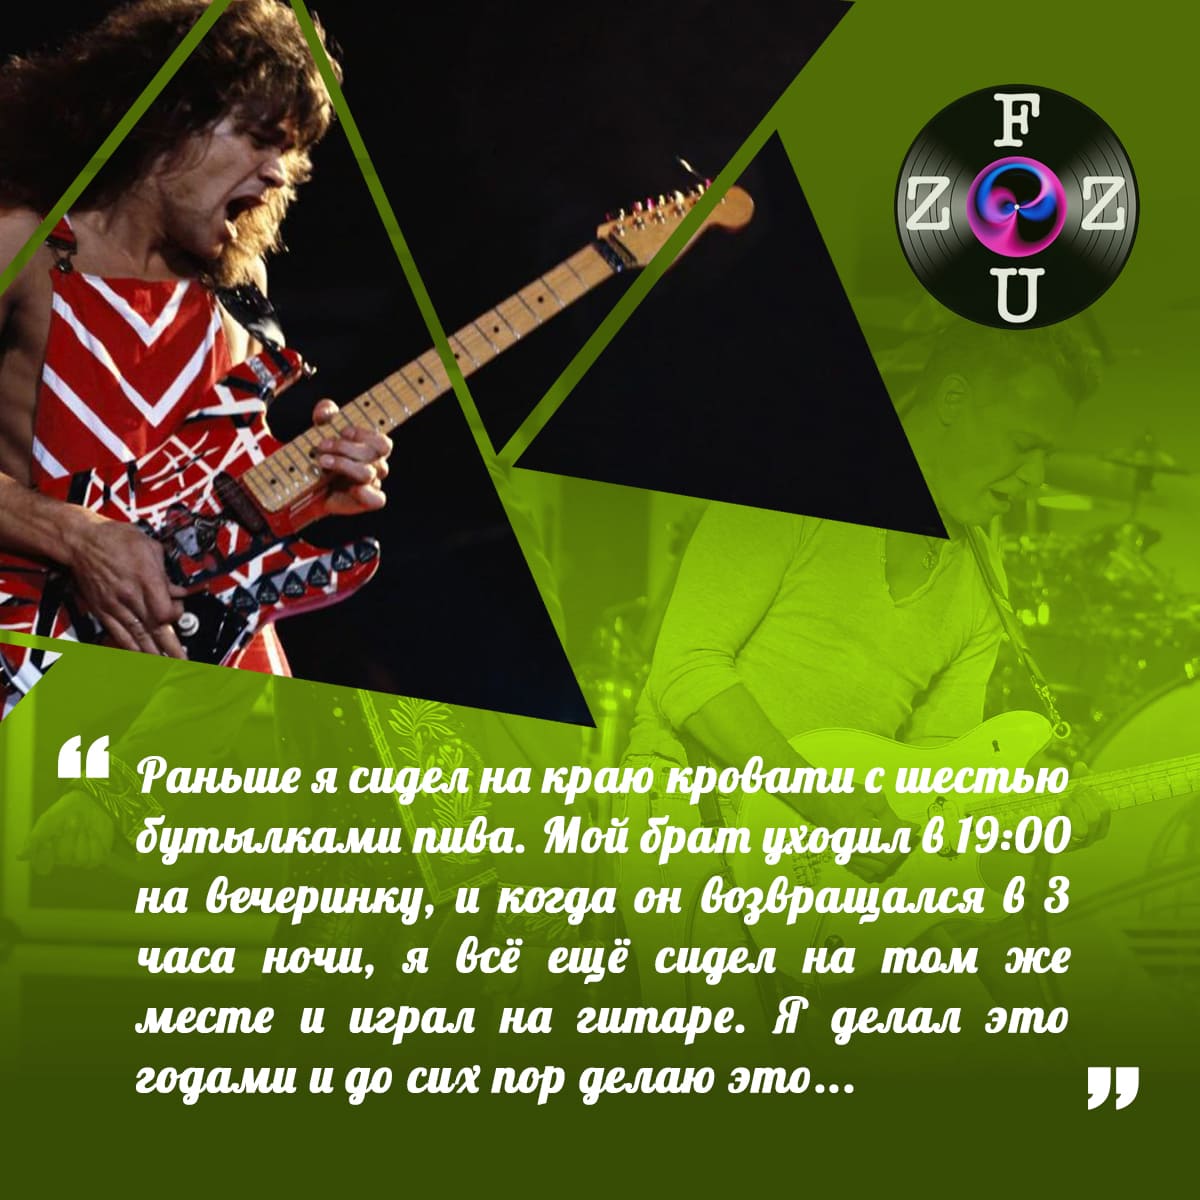 Eddie Van Halen cita